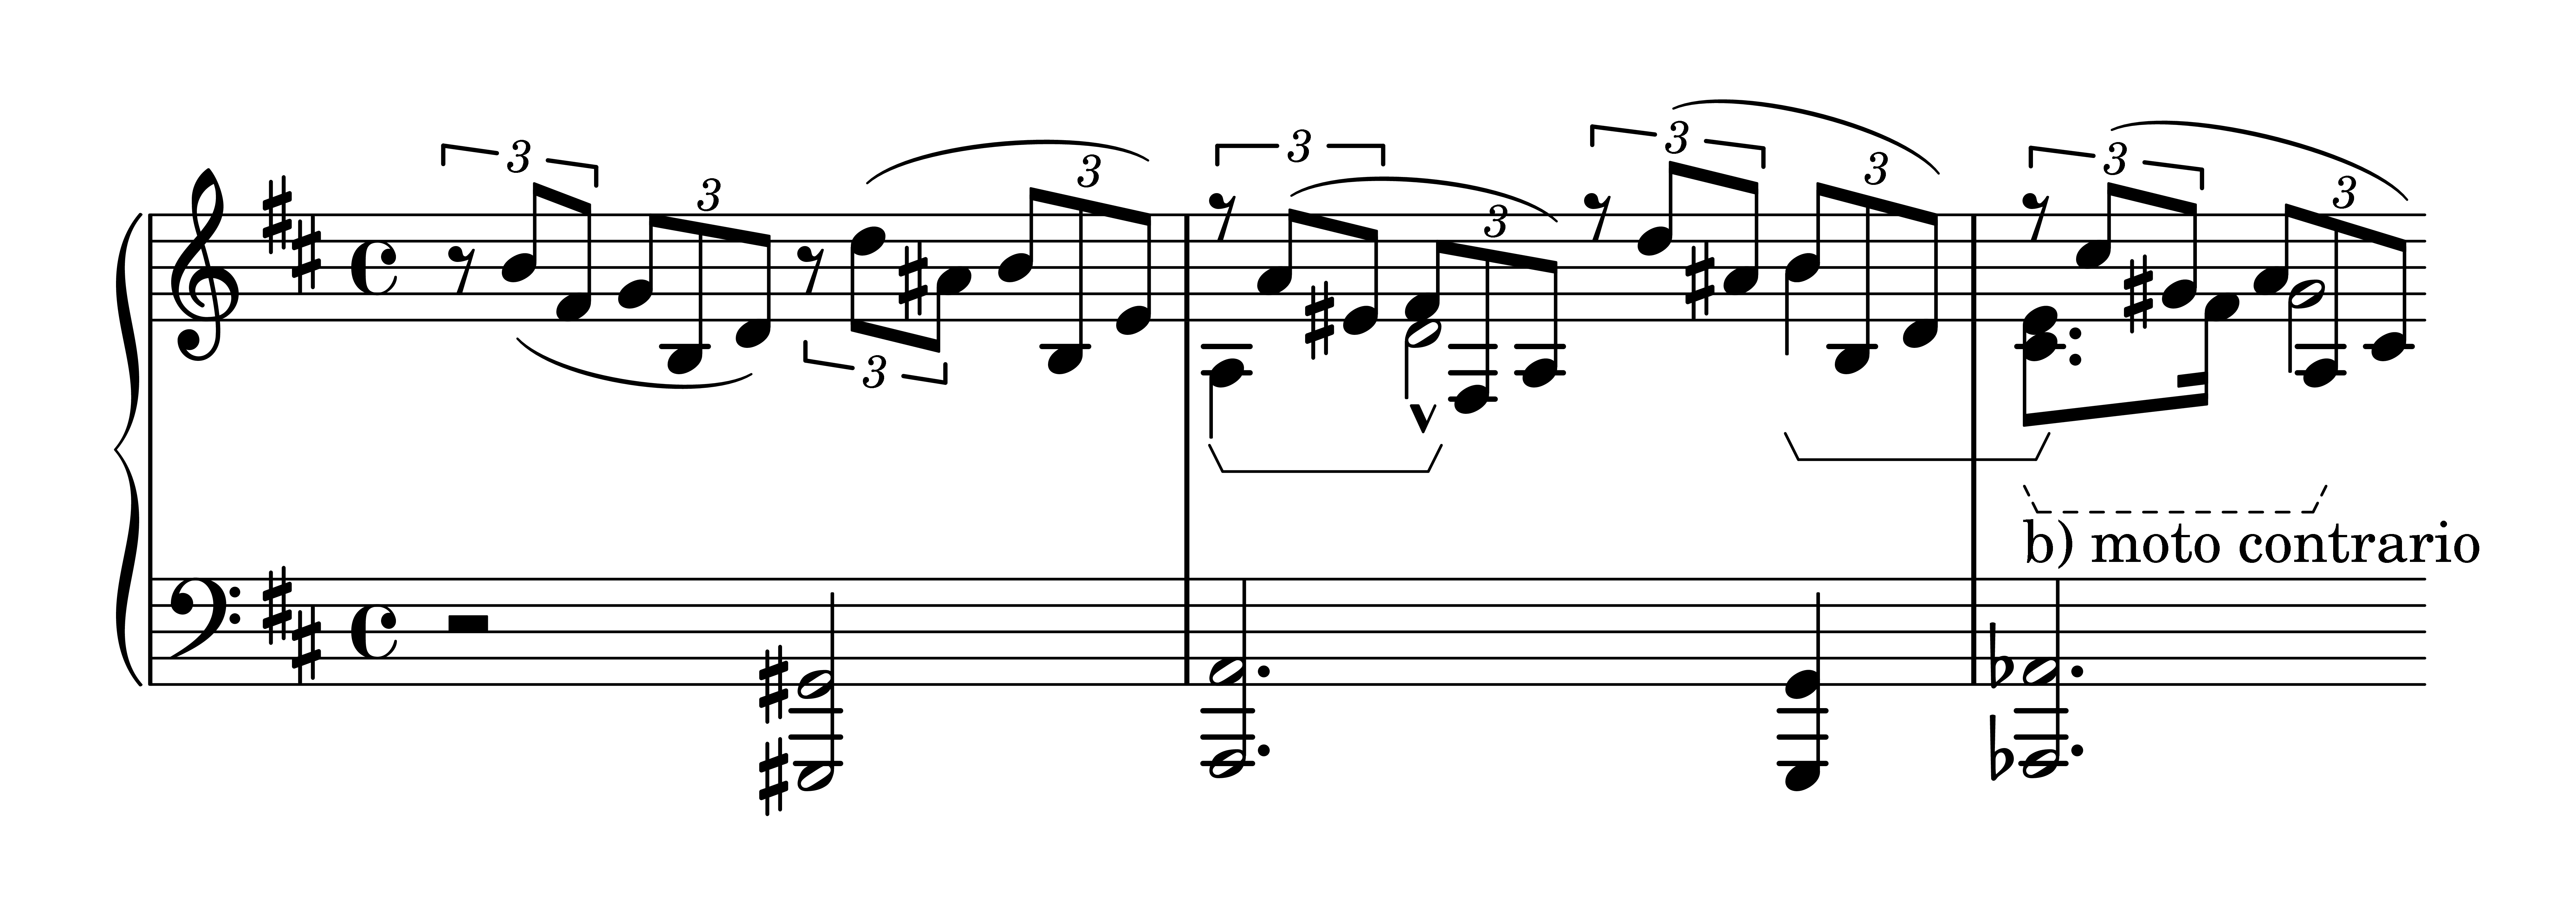 Es. 10: Robert Schumann, op. 133 n. 2, bb. 1-3